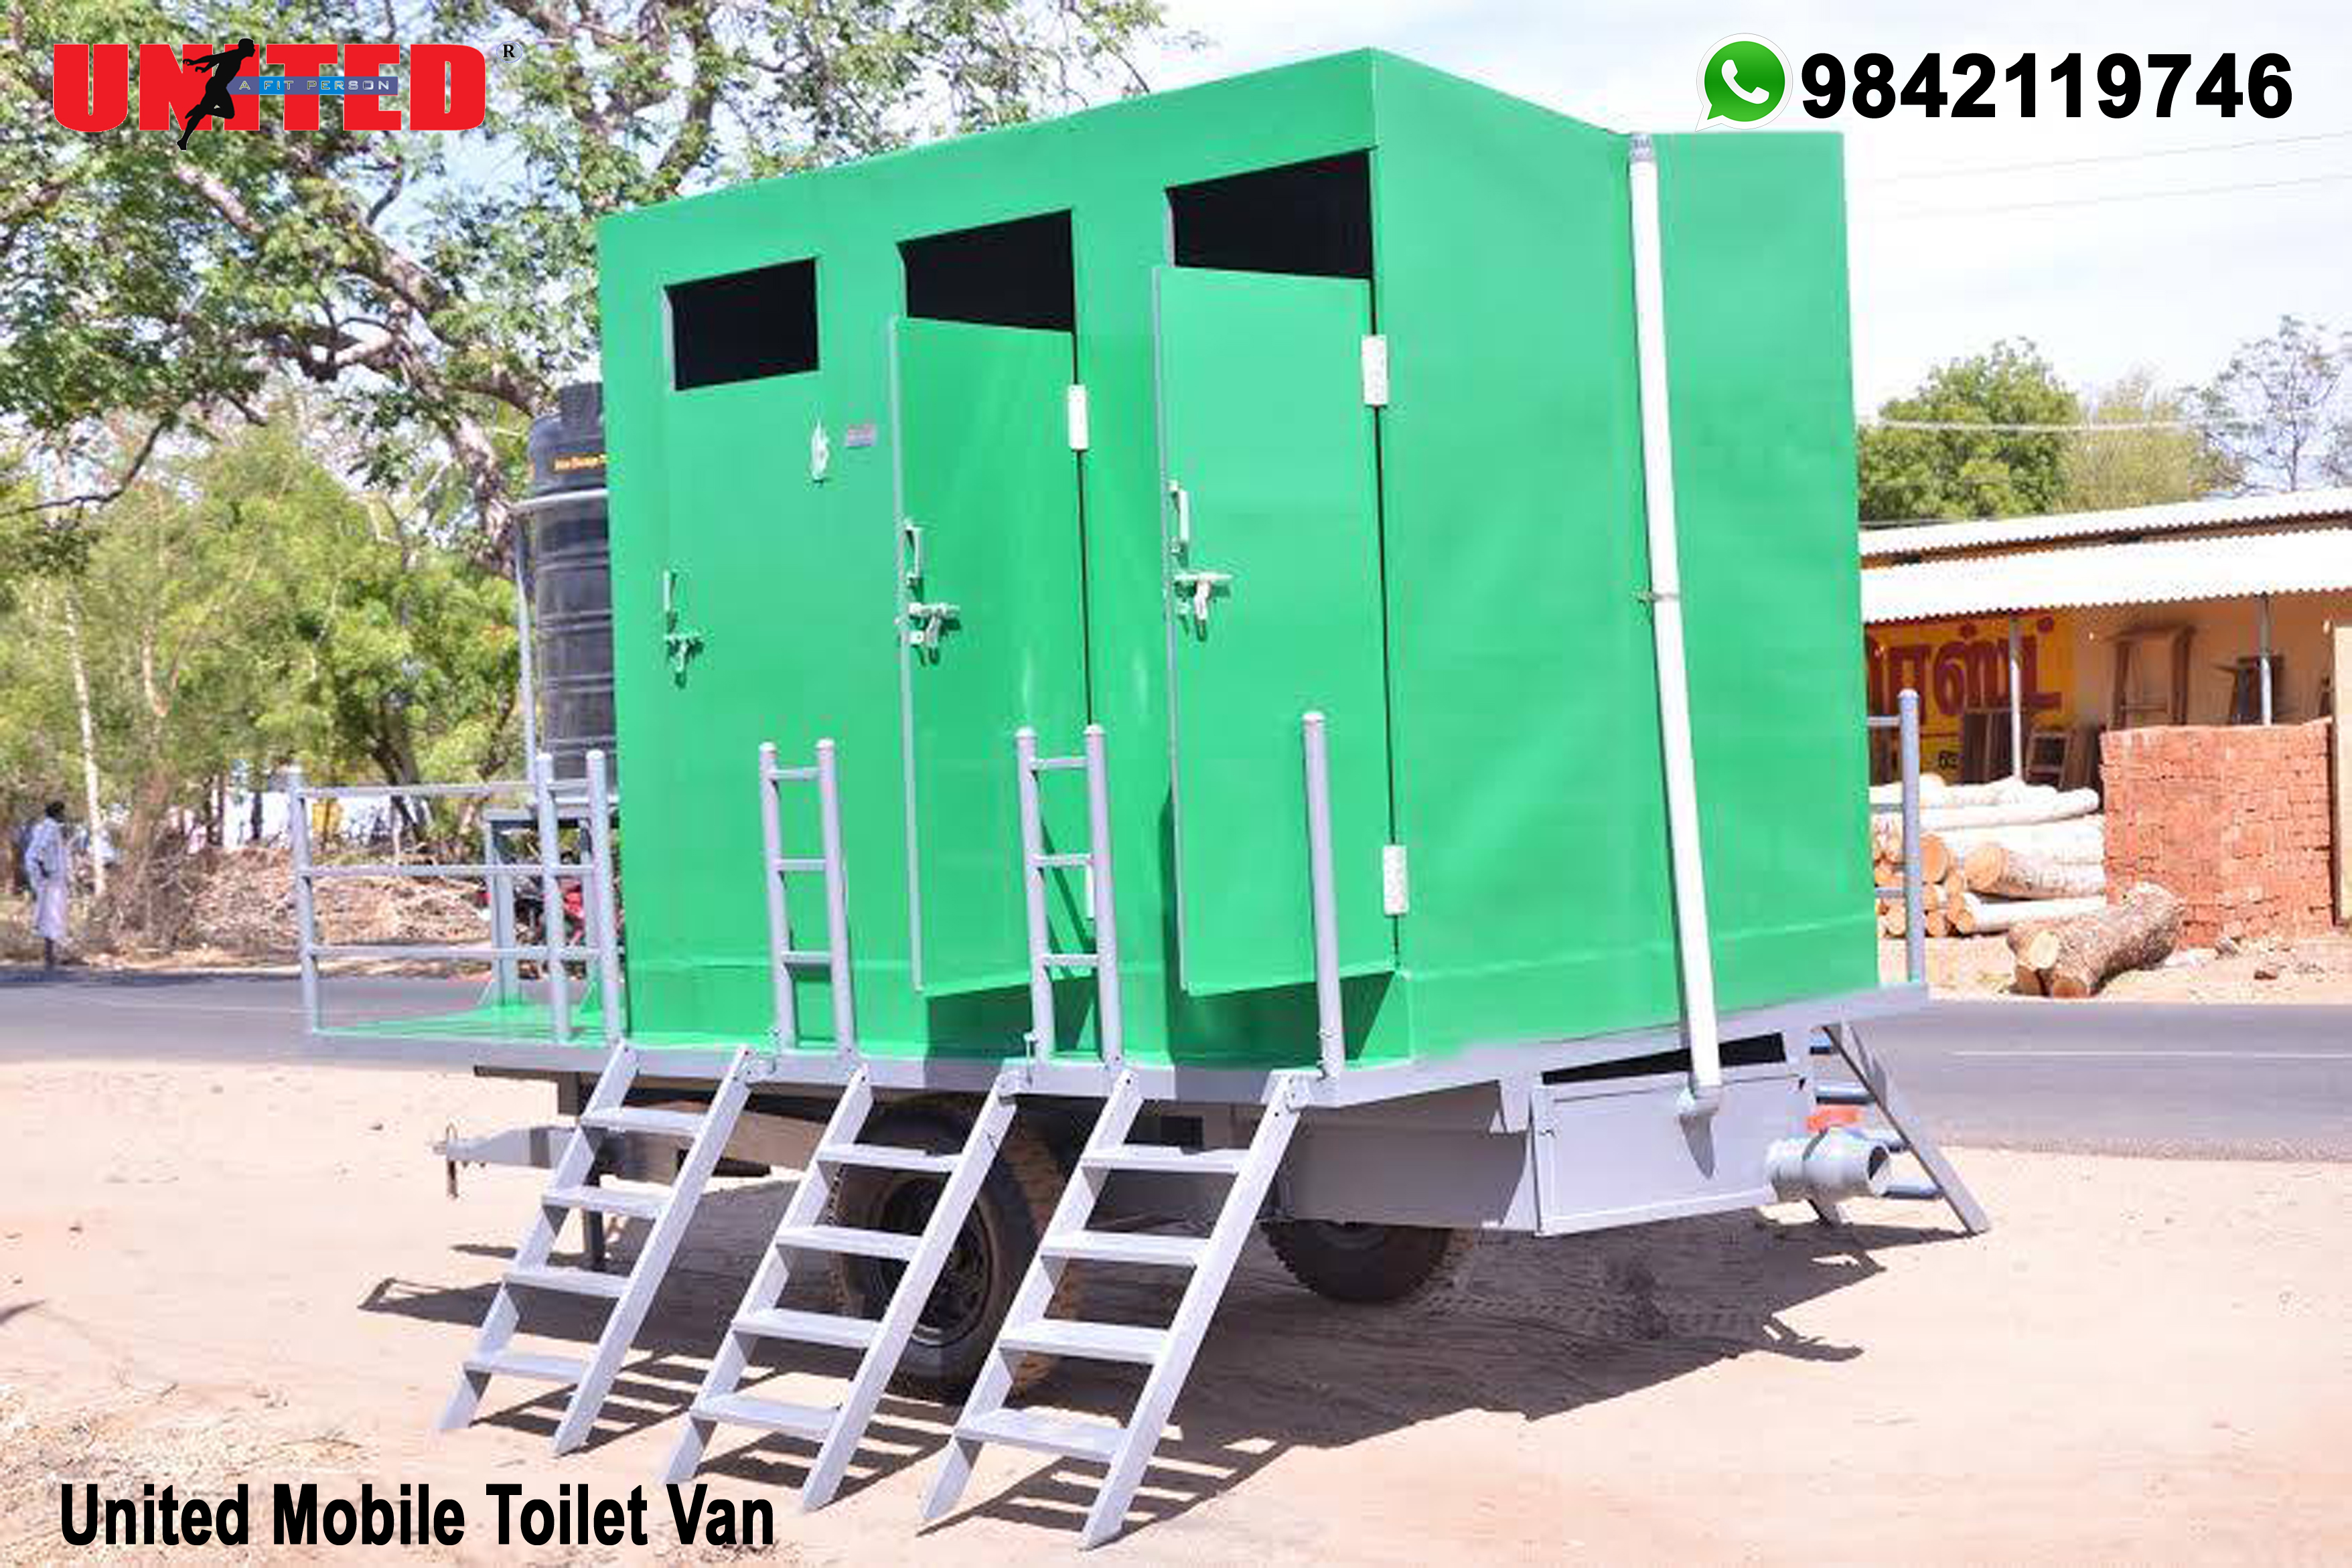 United Mobile Toilet Van